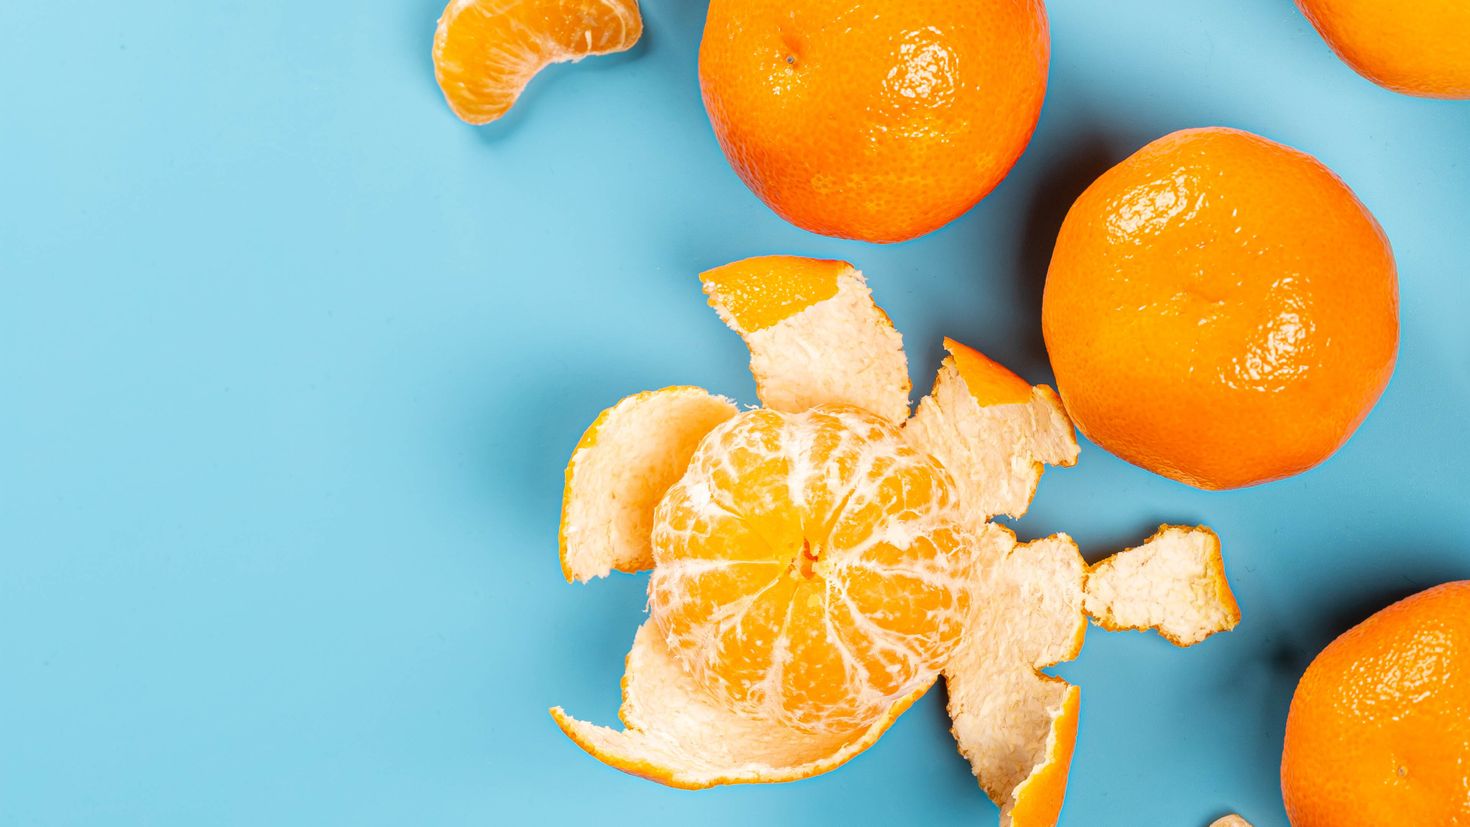 Мандарин обои. Мандаринка цитрус. Танжерин цитрус. Цитрус мандарин +апельсин. Апельсины на столе.